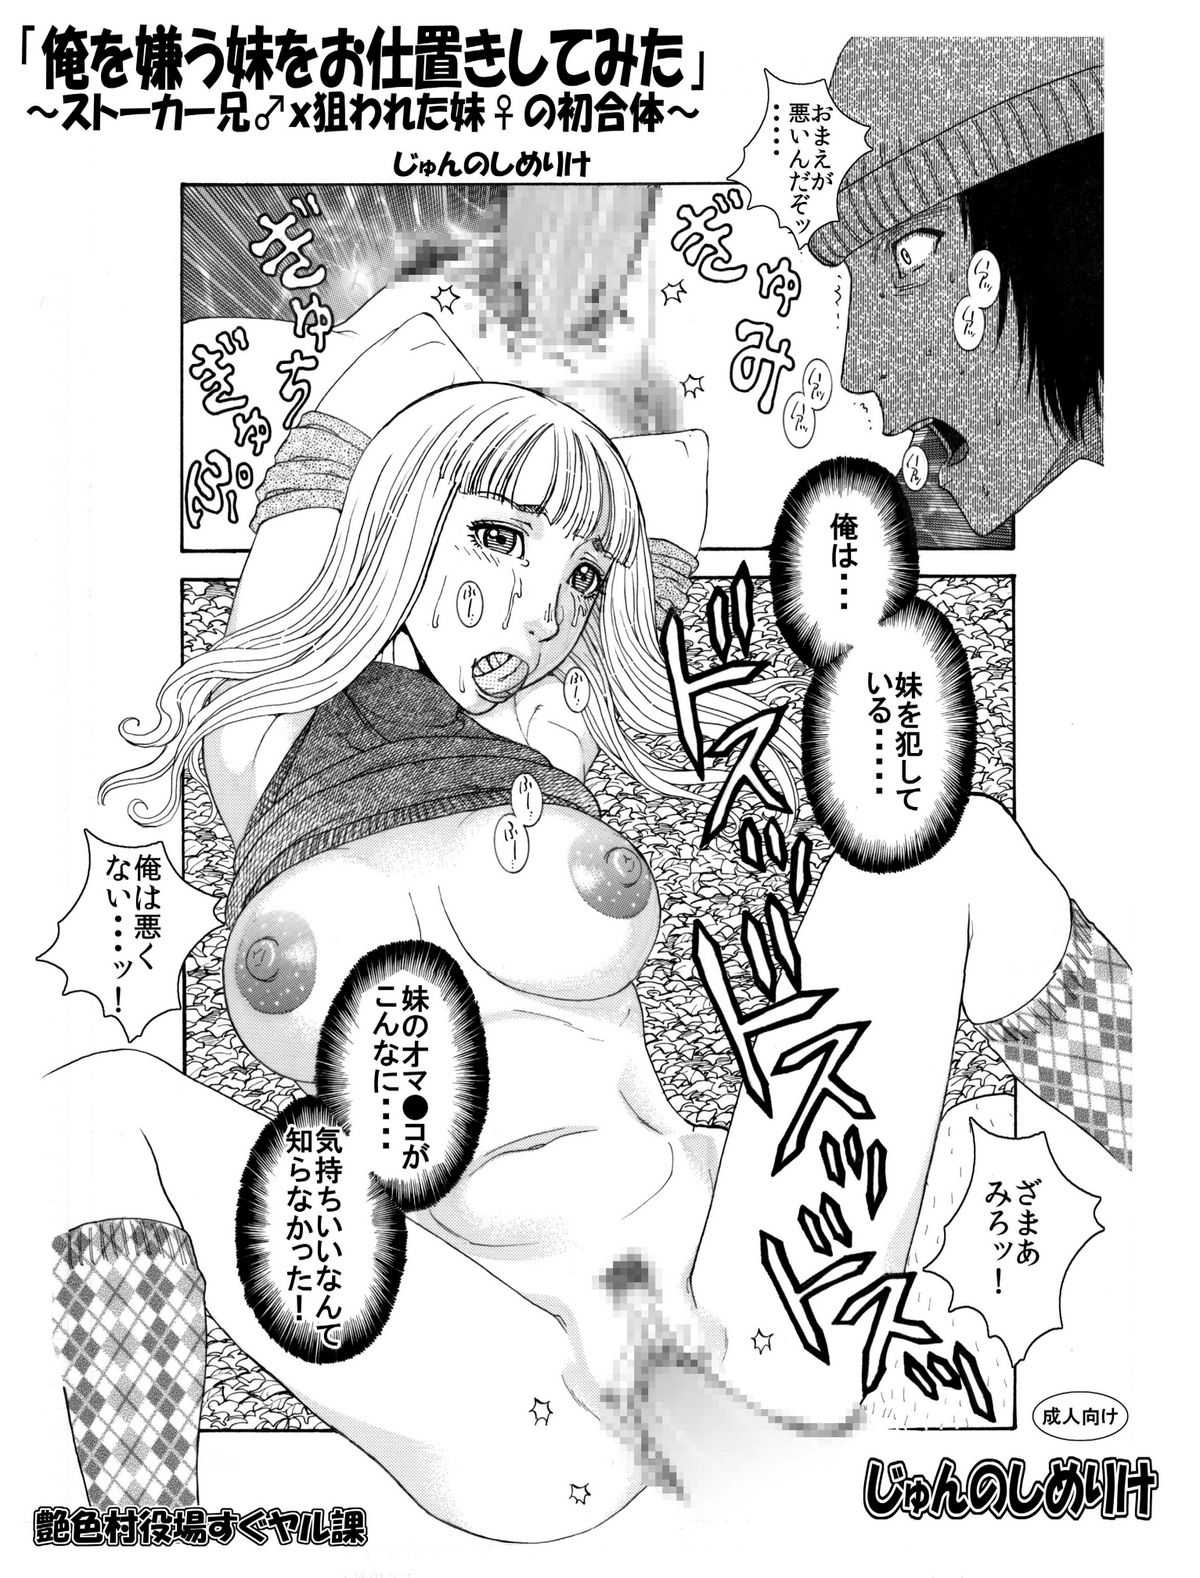 [Enshoku Murayakuba Suguyaruka] それぞれの兄妹 「抑えられない性欲」 [艶色村役場すぐヤル課] それぞれの兄妹 「抑えられない性欲」